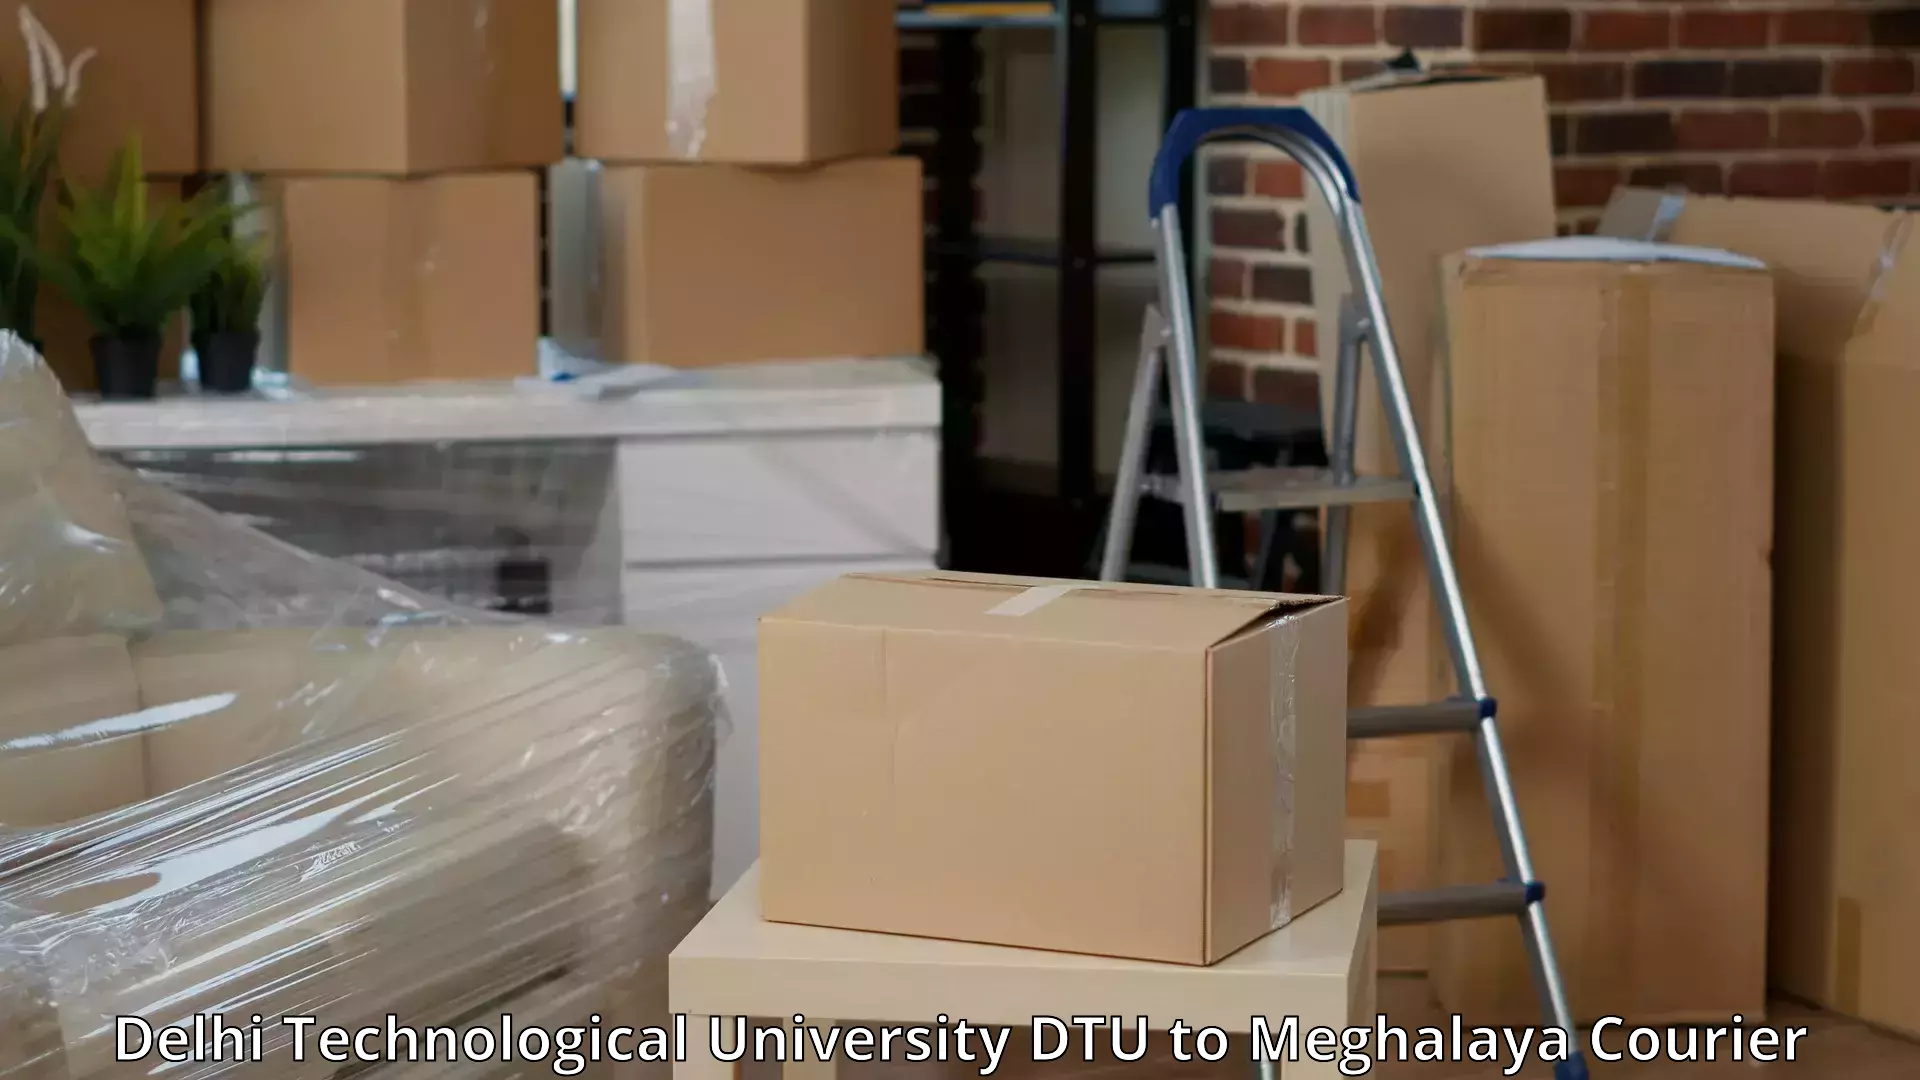 Safe furniture transport Delhi Technological University DTU to Meghalaya